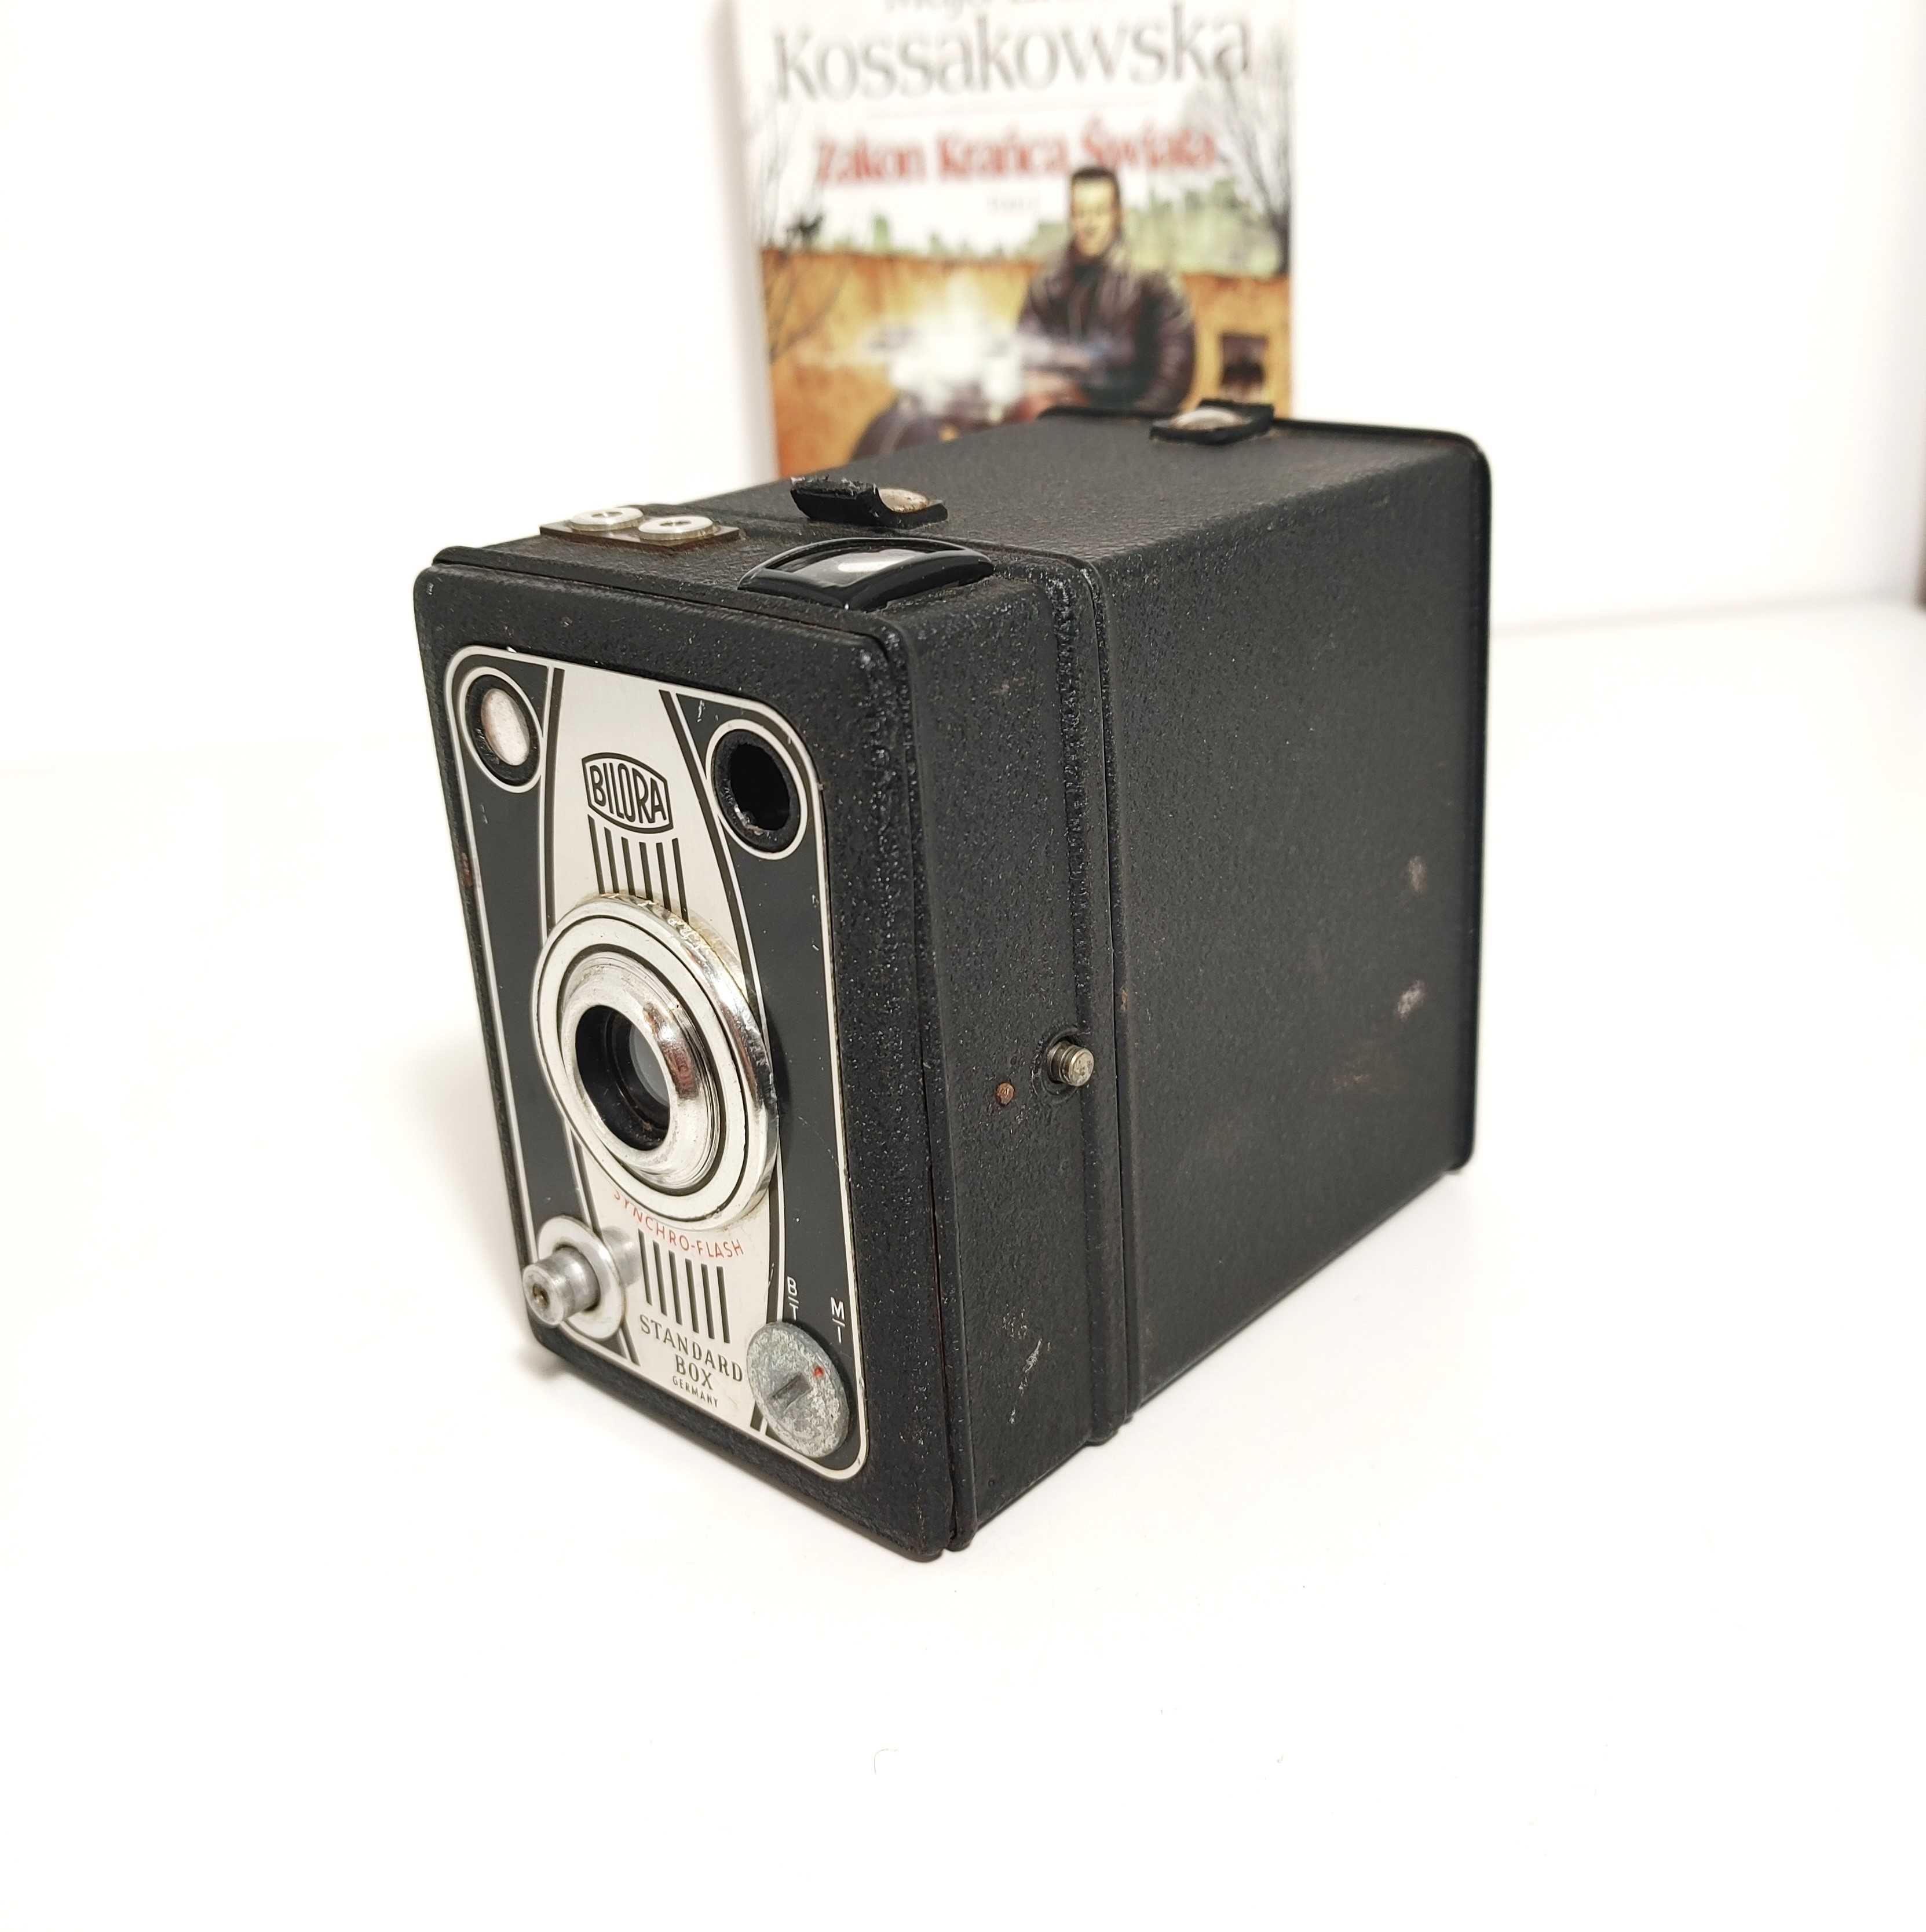 Analogowy aparat fotograficzny BILORA Standard BOX Synchro Flash 1949